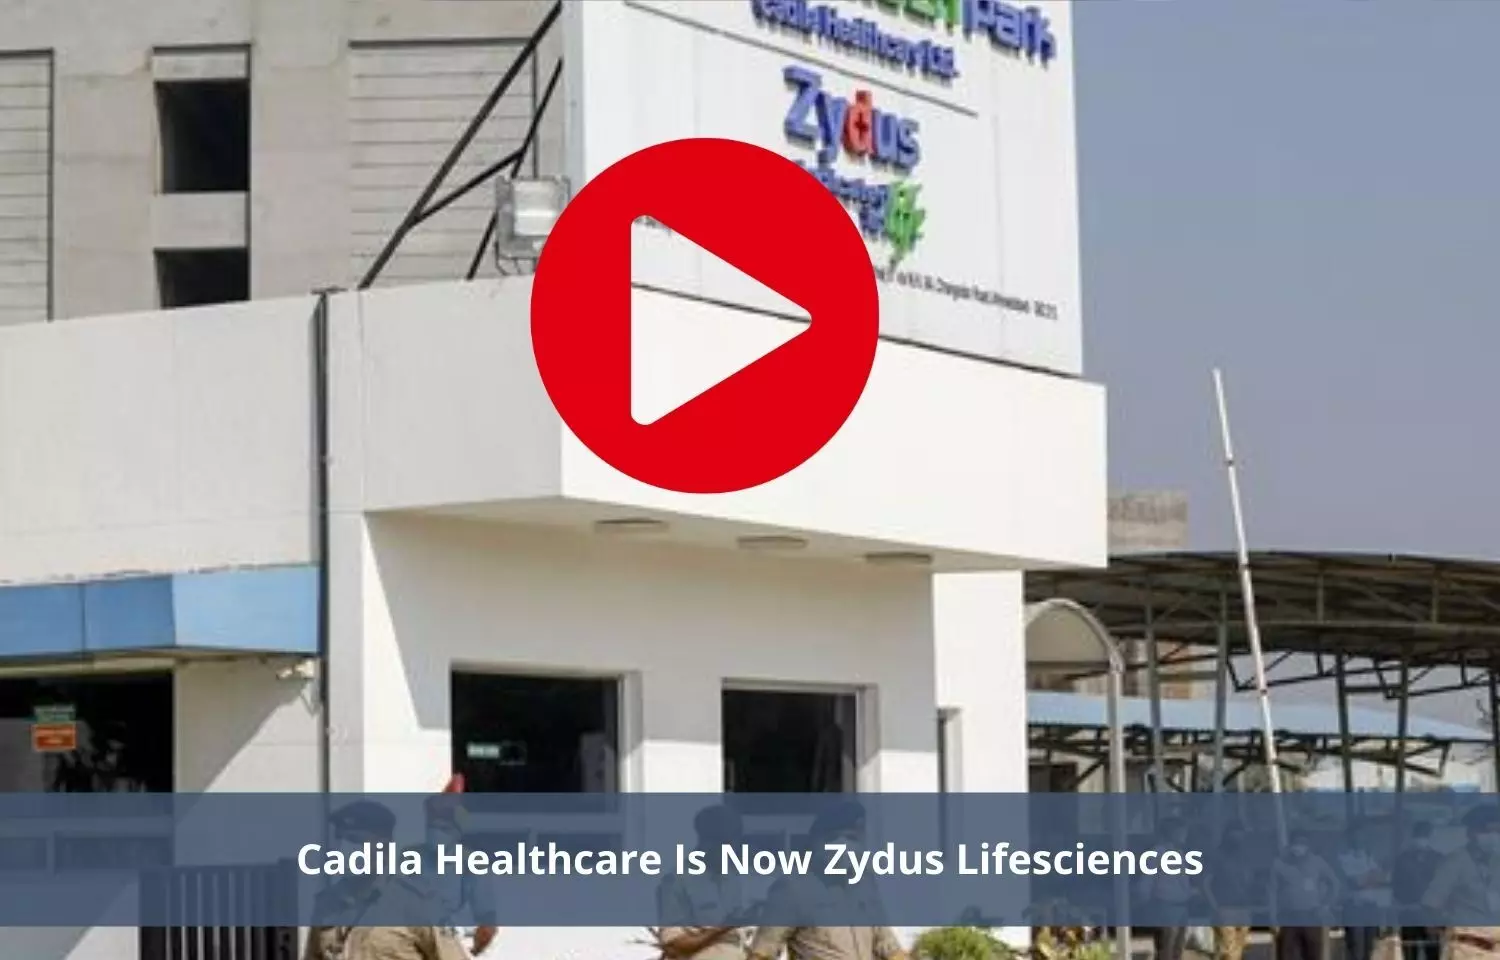 Cadila Healthcare is now Zydus Lifesciences